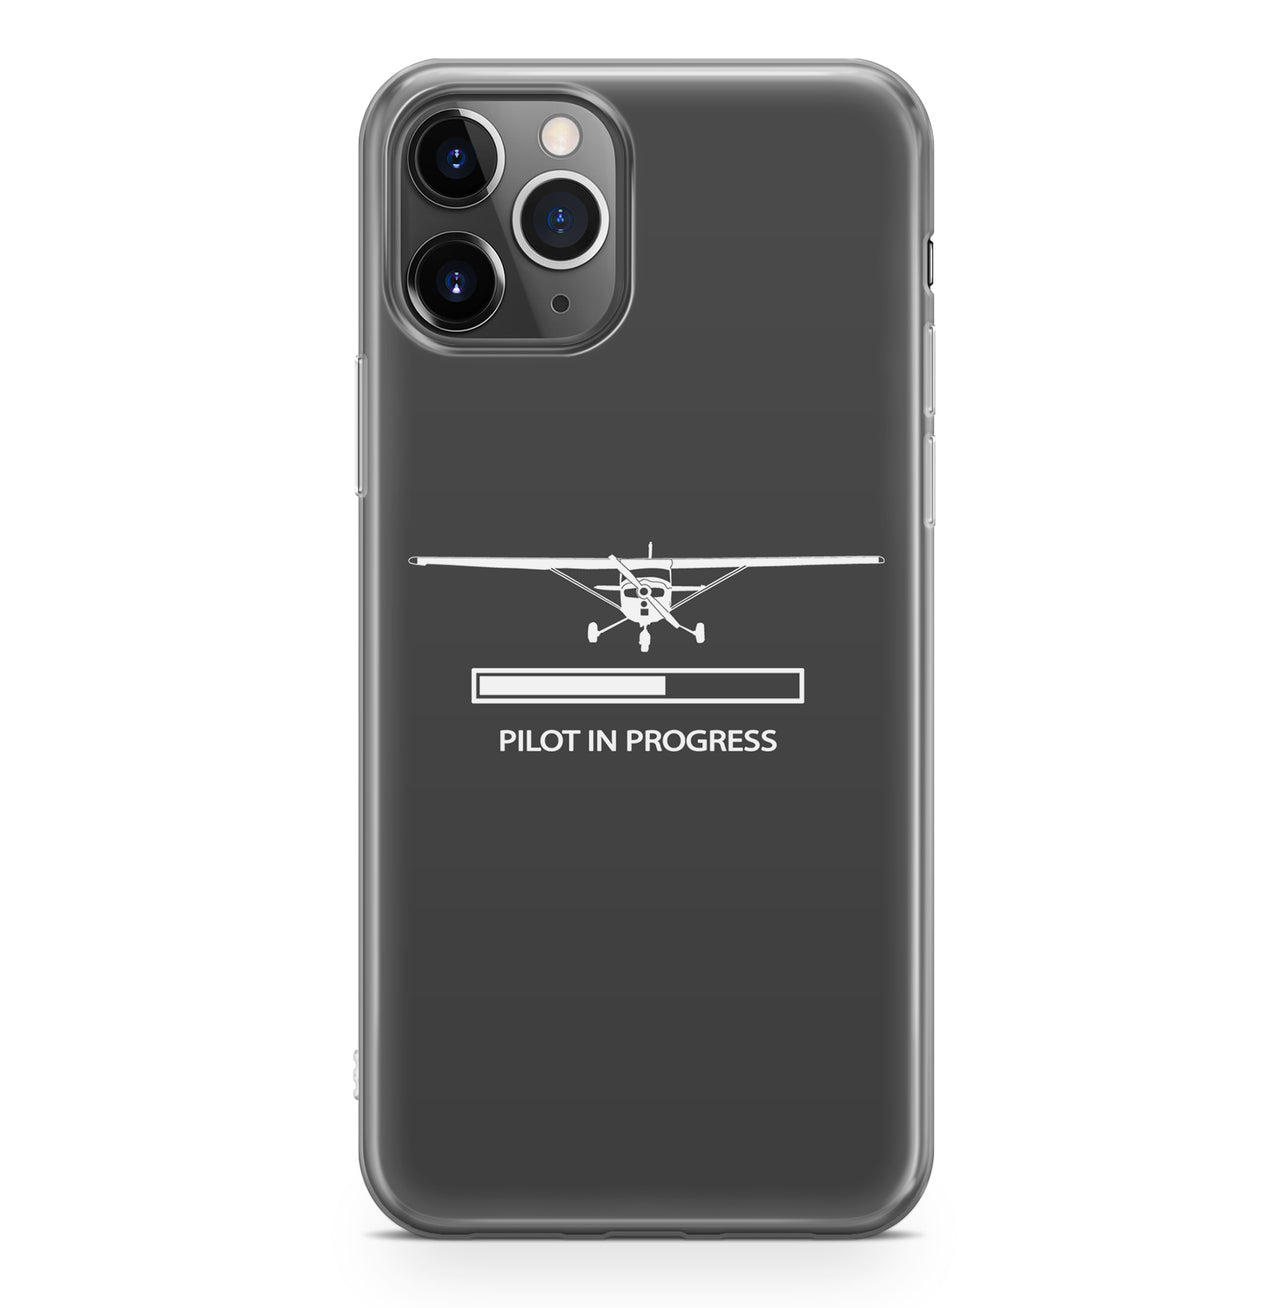 Pilot In Progress (Cessna) Designed iPhone Cases